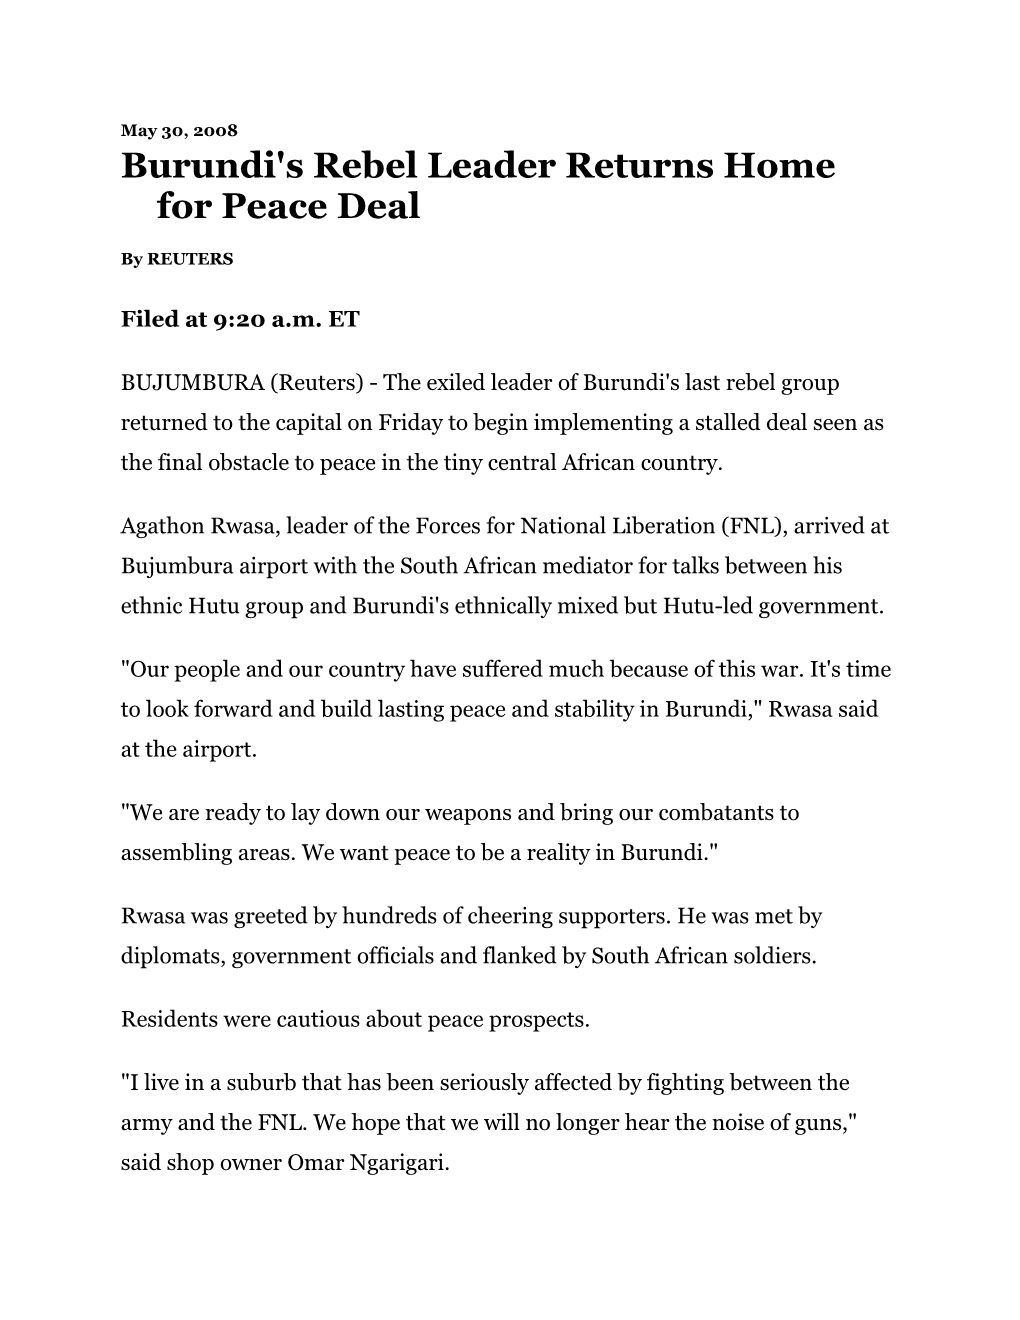 Burundi's Rebel Leader Returns Home for Peace Deal